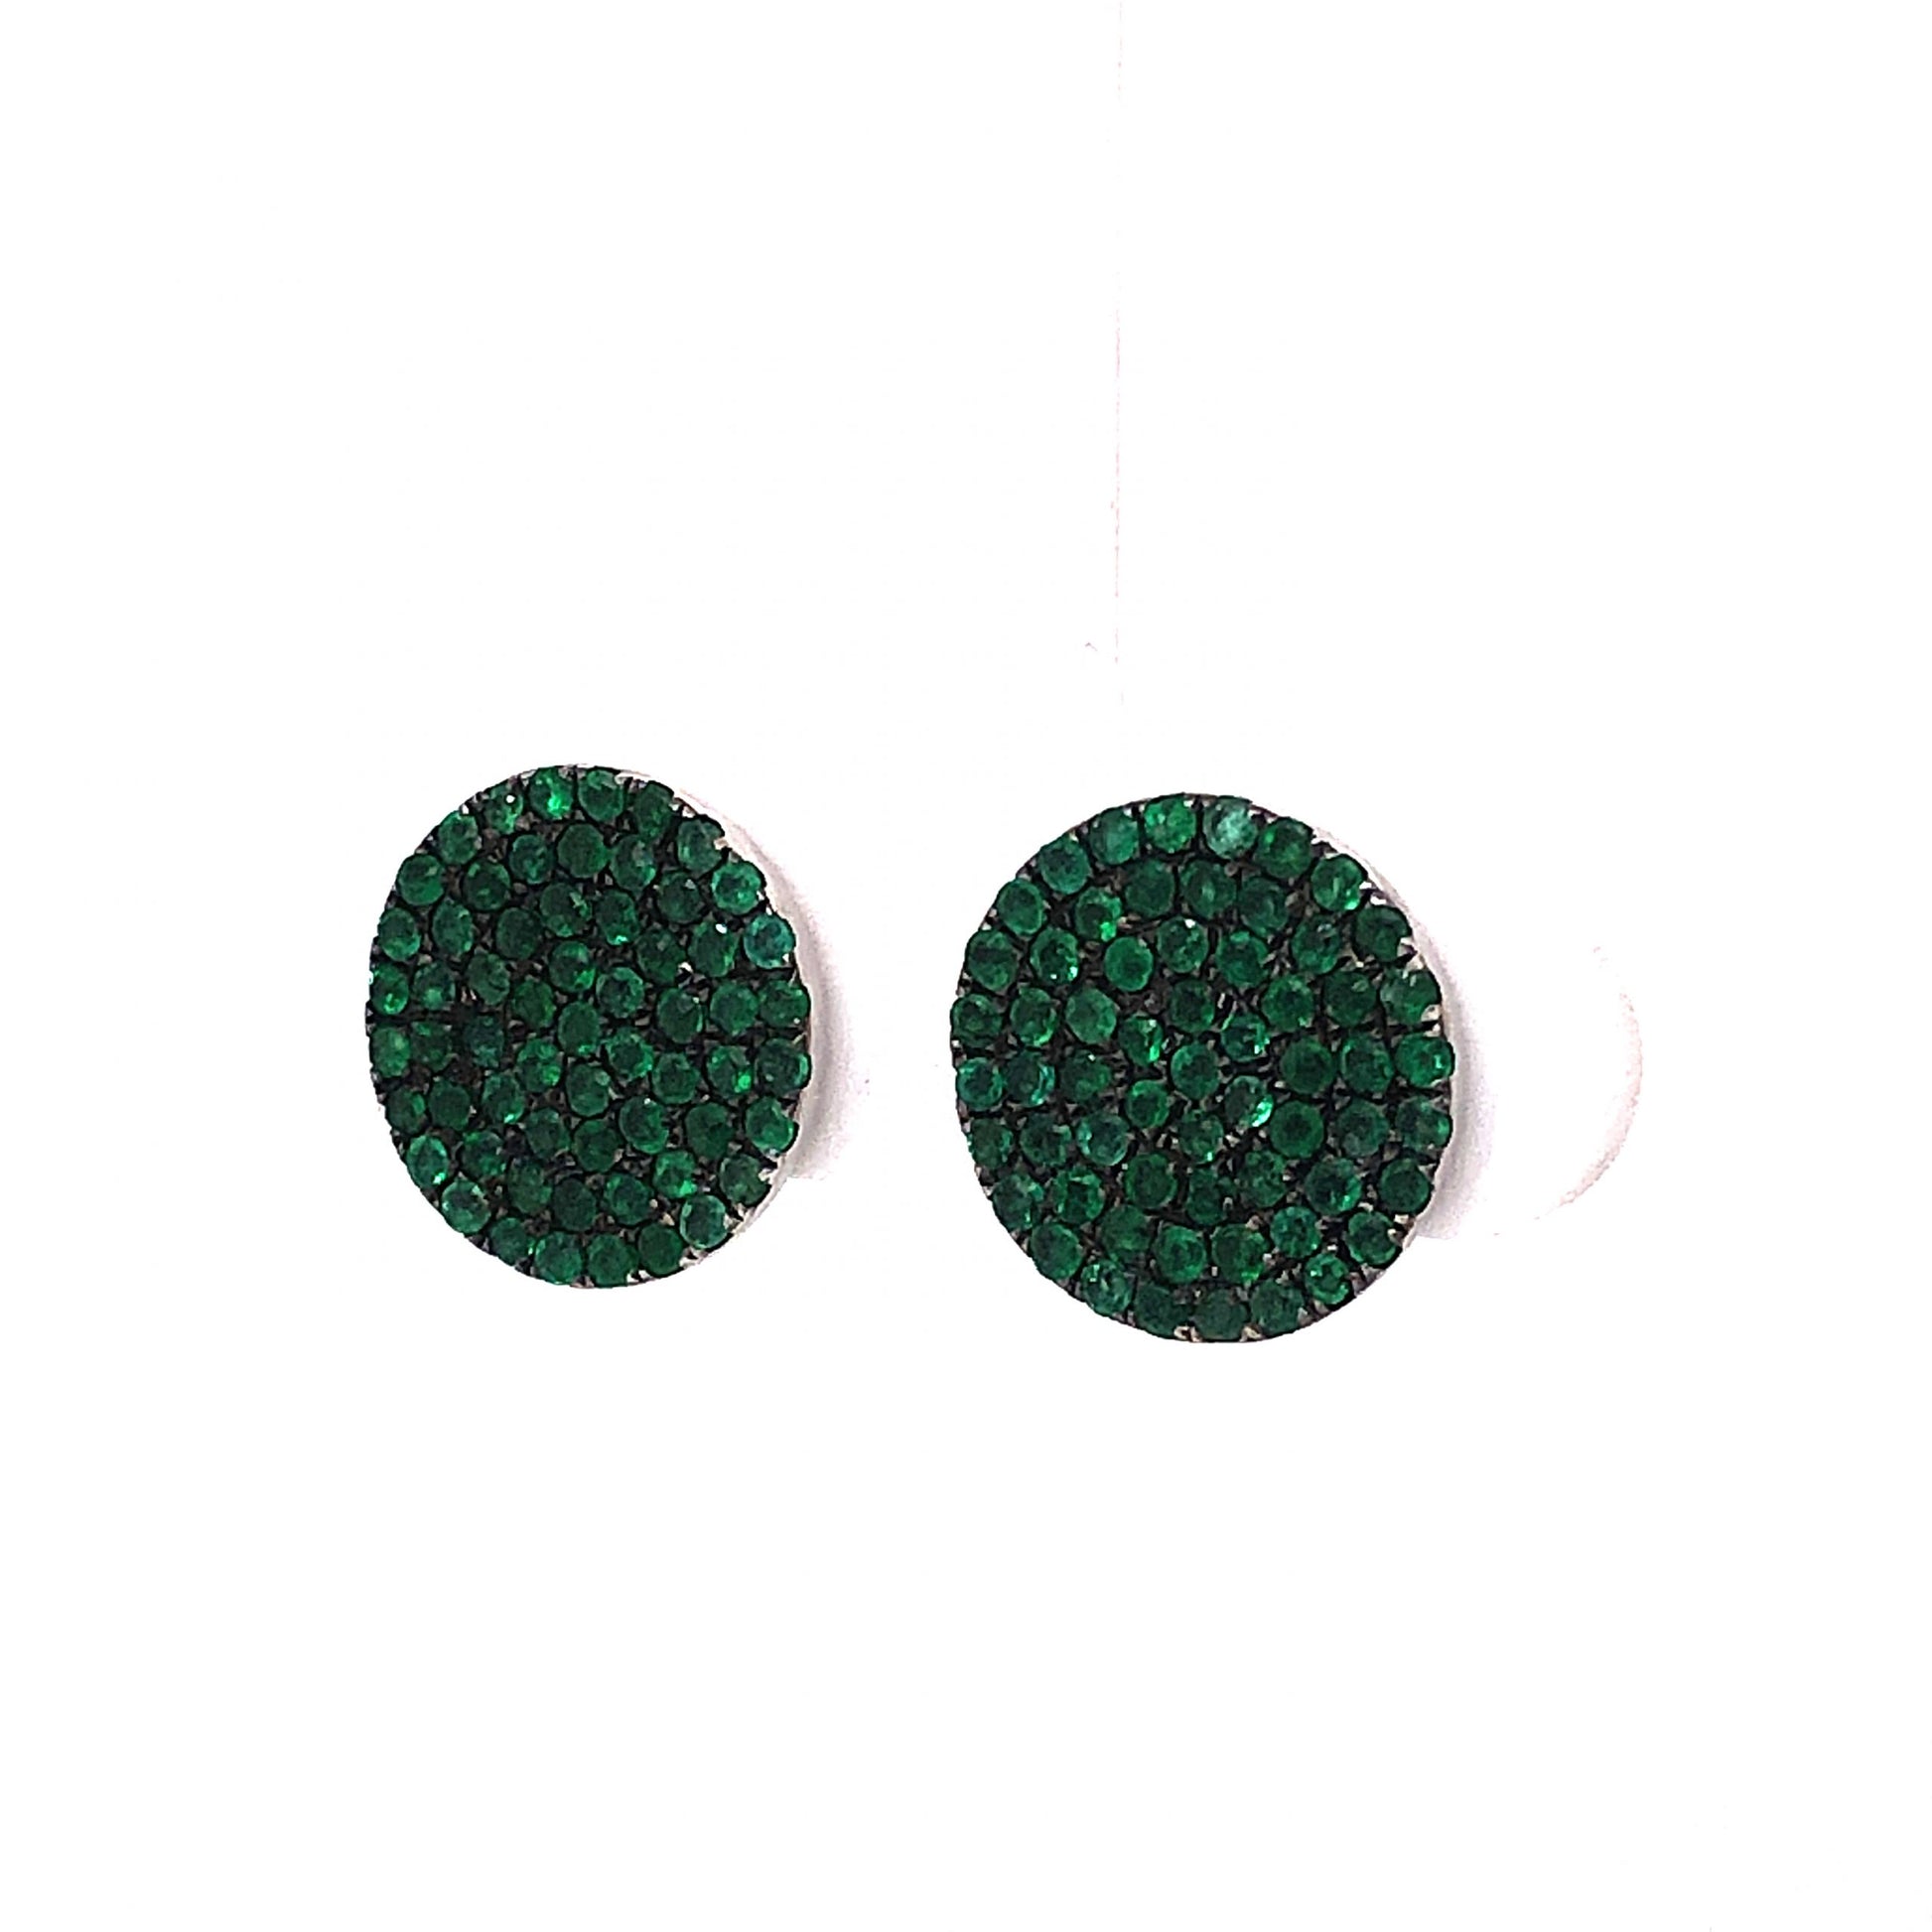 Emerald Disc Stud Earrings in 18k White GoldComposition: 18 Karat White GoldTotal Gram Weight: 5.6 gInscription: 18k